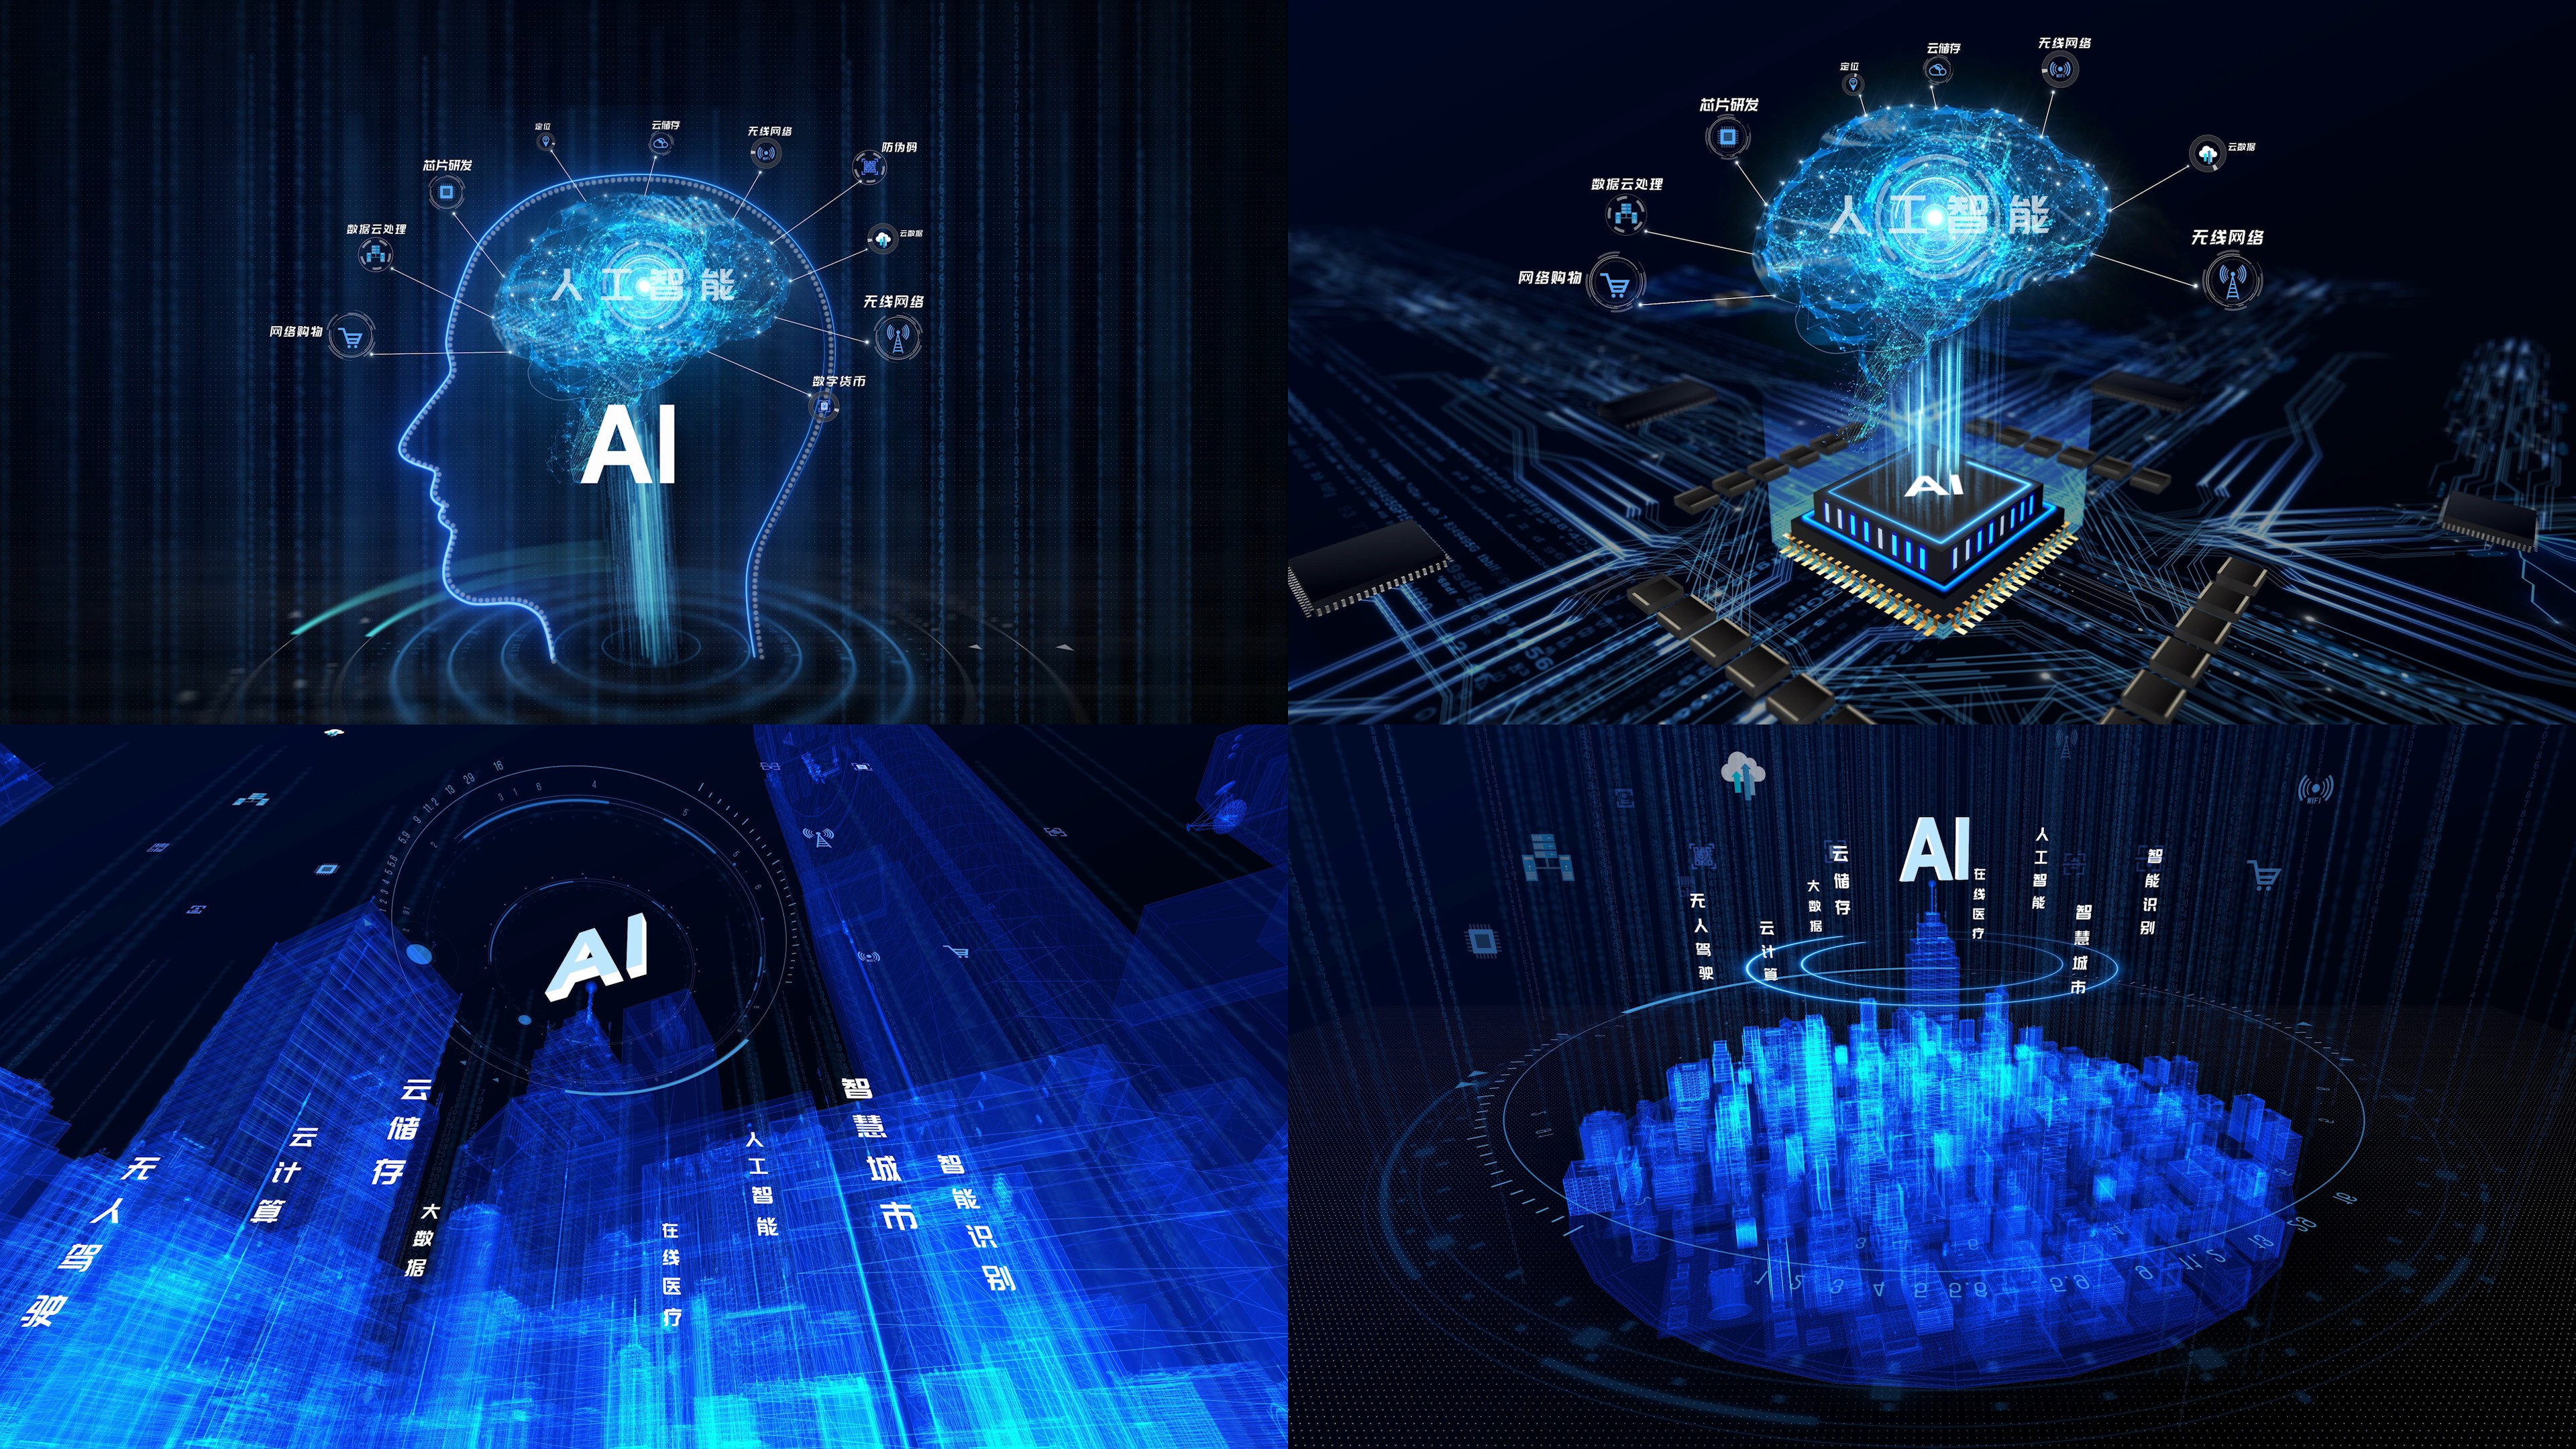 AI人工智能 智慧大脑数据运算分析 科技开场